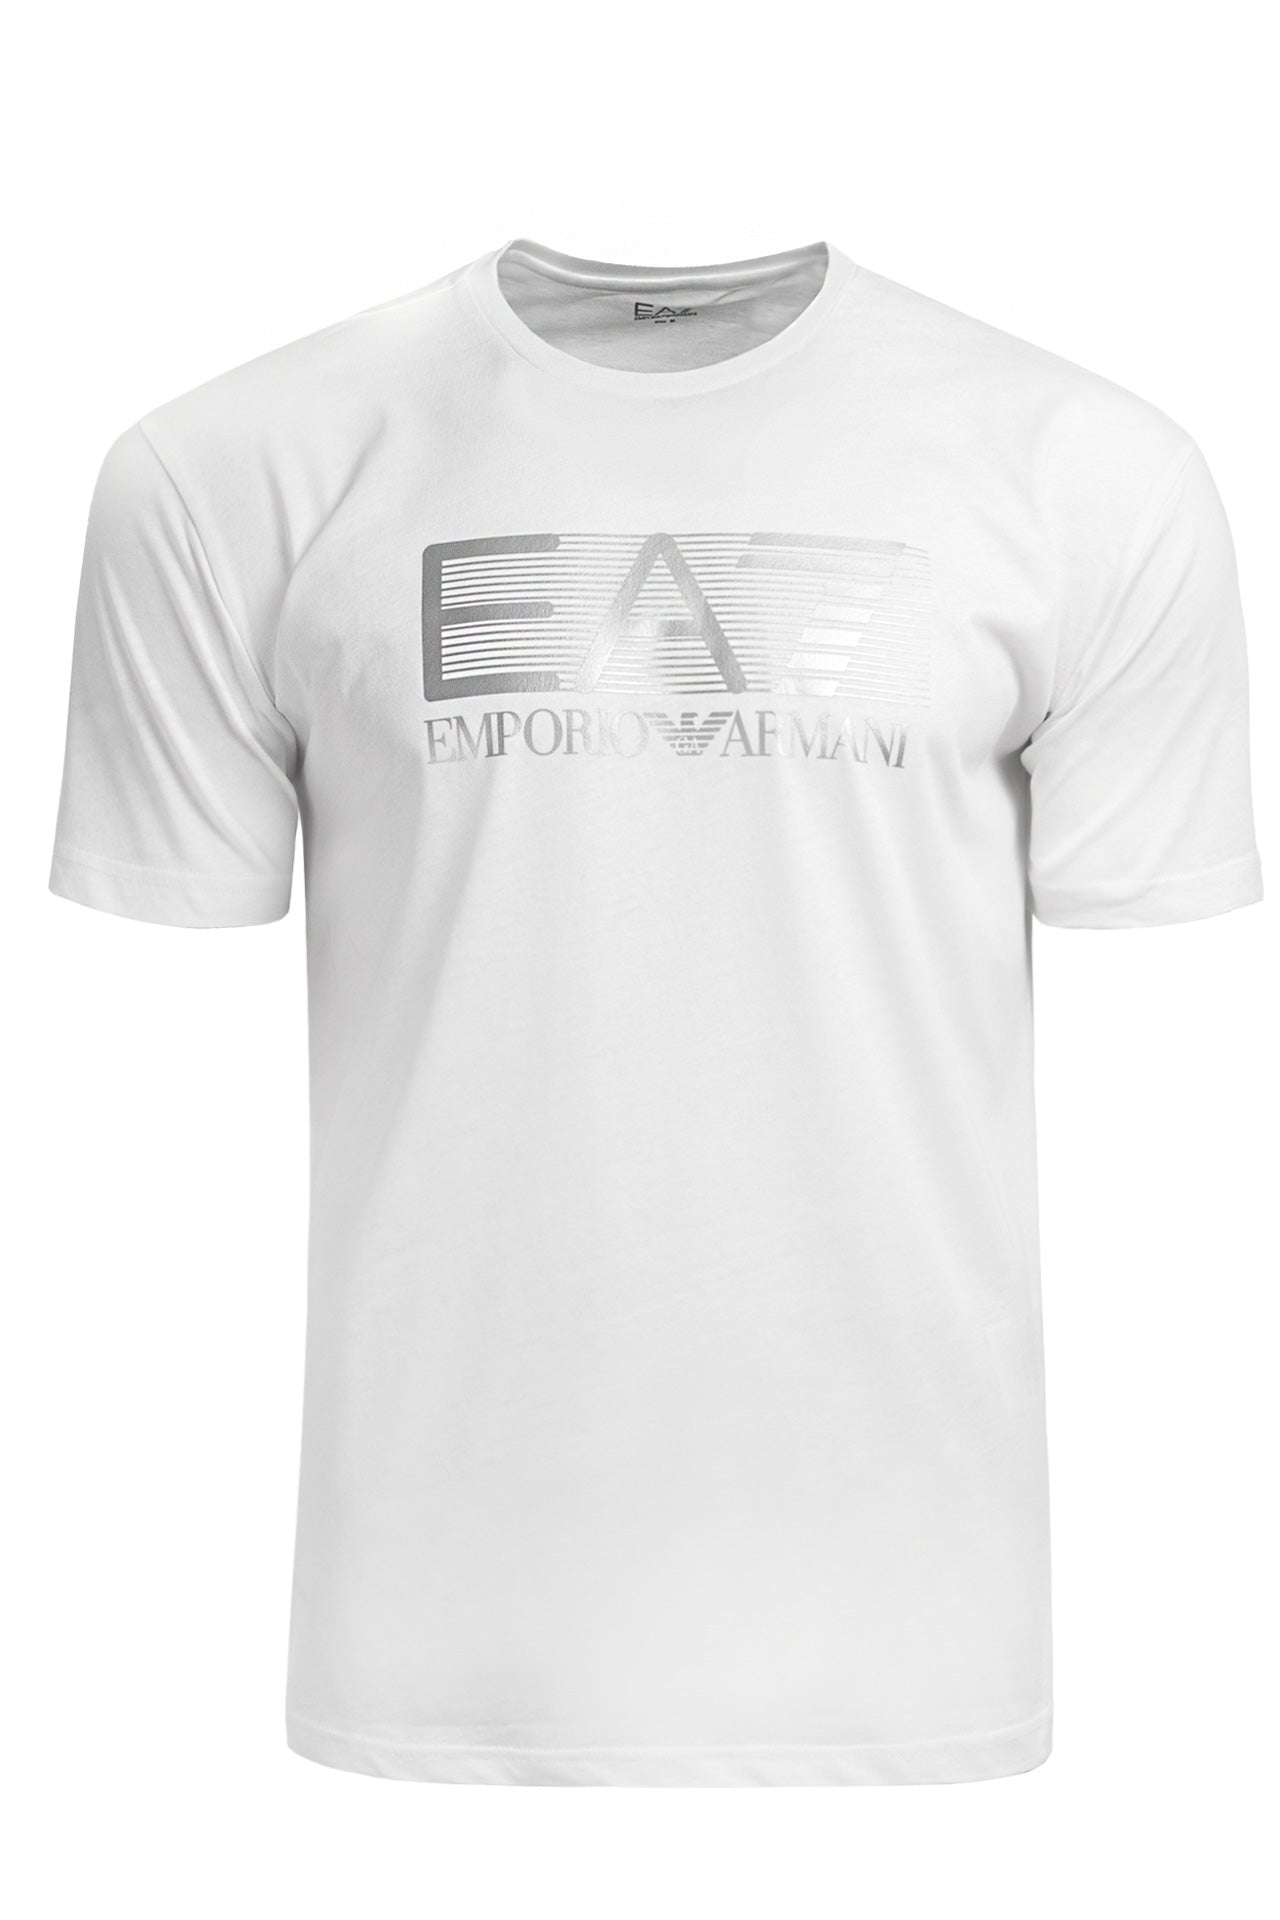 Camiseta EA7 - 6LPT09 PJ02Z 0100